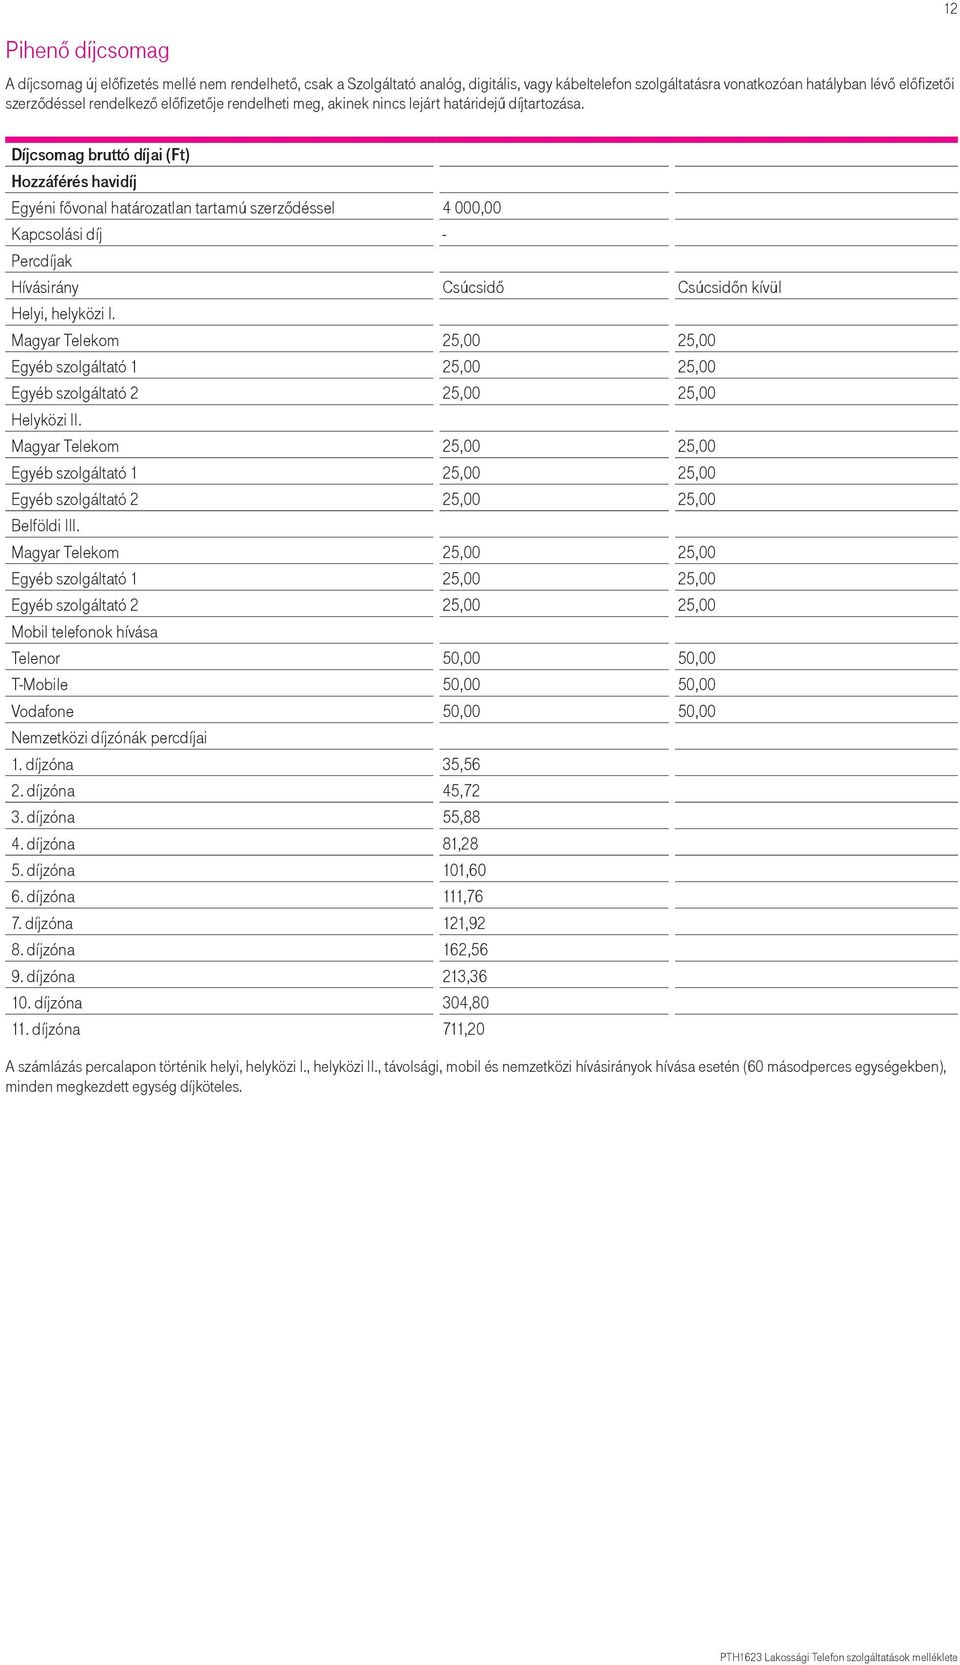 Díjcsomag bruttó díjai (Ft) Egyéni fővonal határozatlan tartamú szerződéssel 4 000,00 Kapcsolási díj - Hívásirány Csúcsidő Csúcsidőn kívül Magyar Telekom 25,00 25,00 Egyéb szolgáltató 1 25,00 25,00